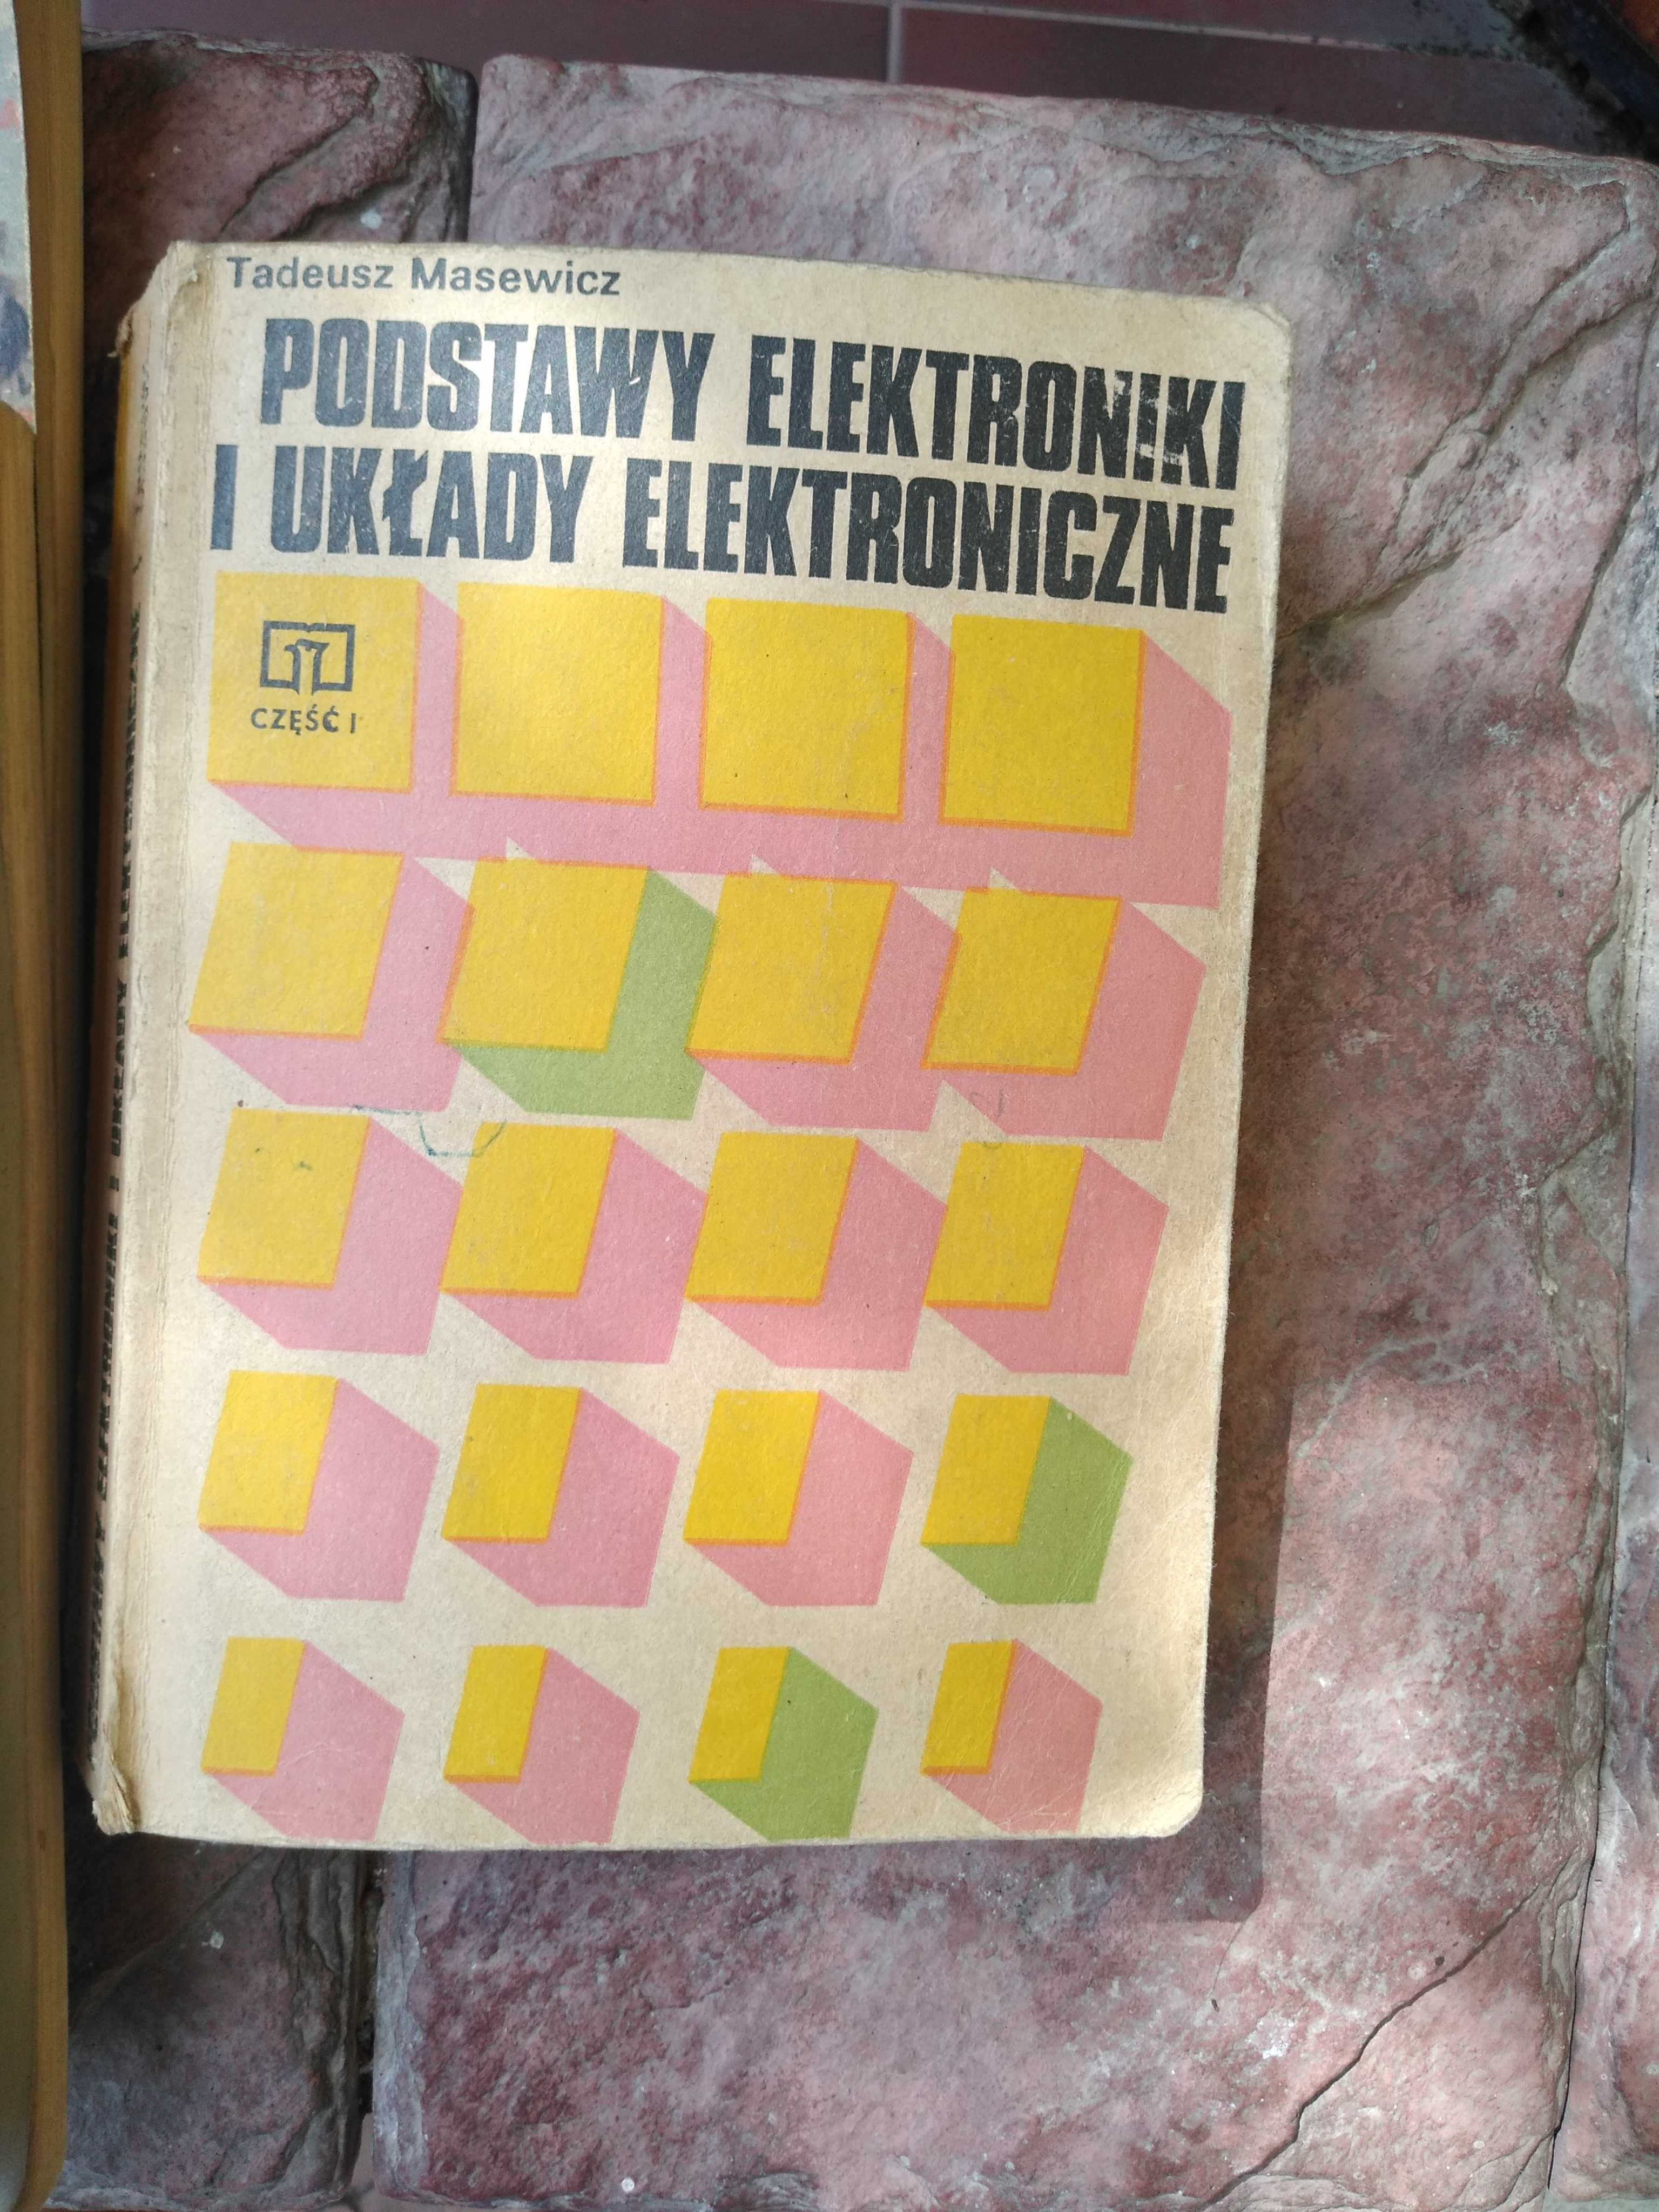 Elektronika stare książki masewicz,chwalebna